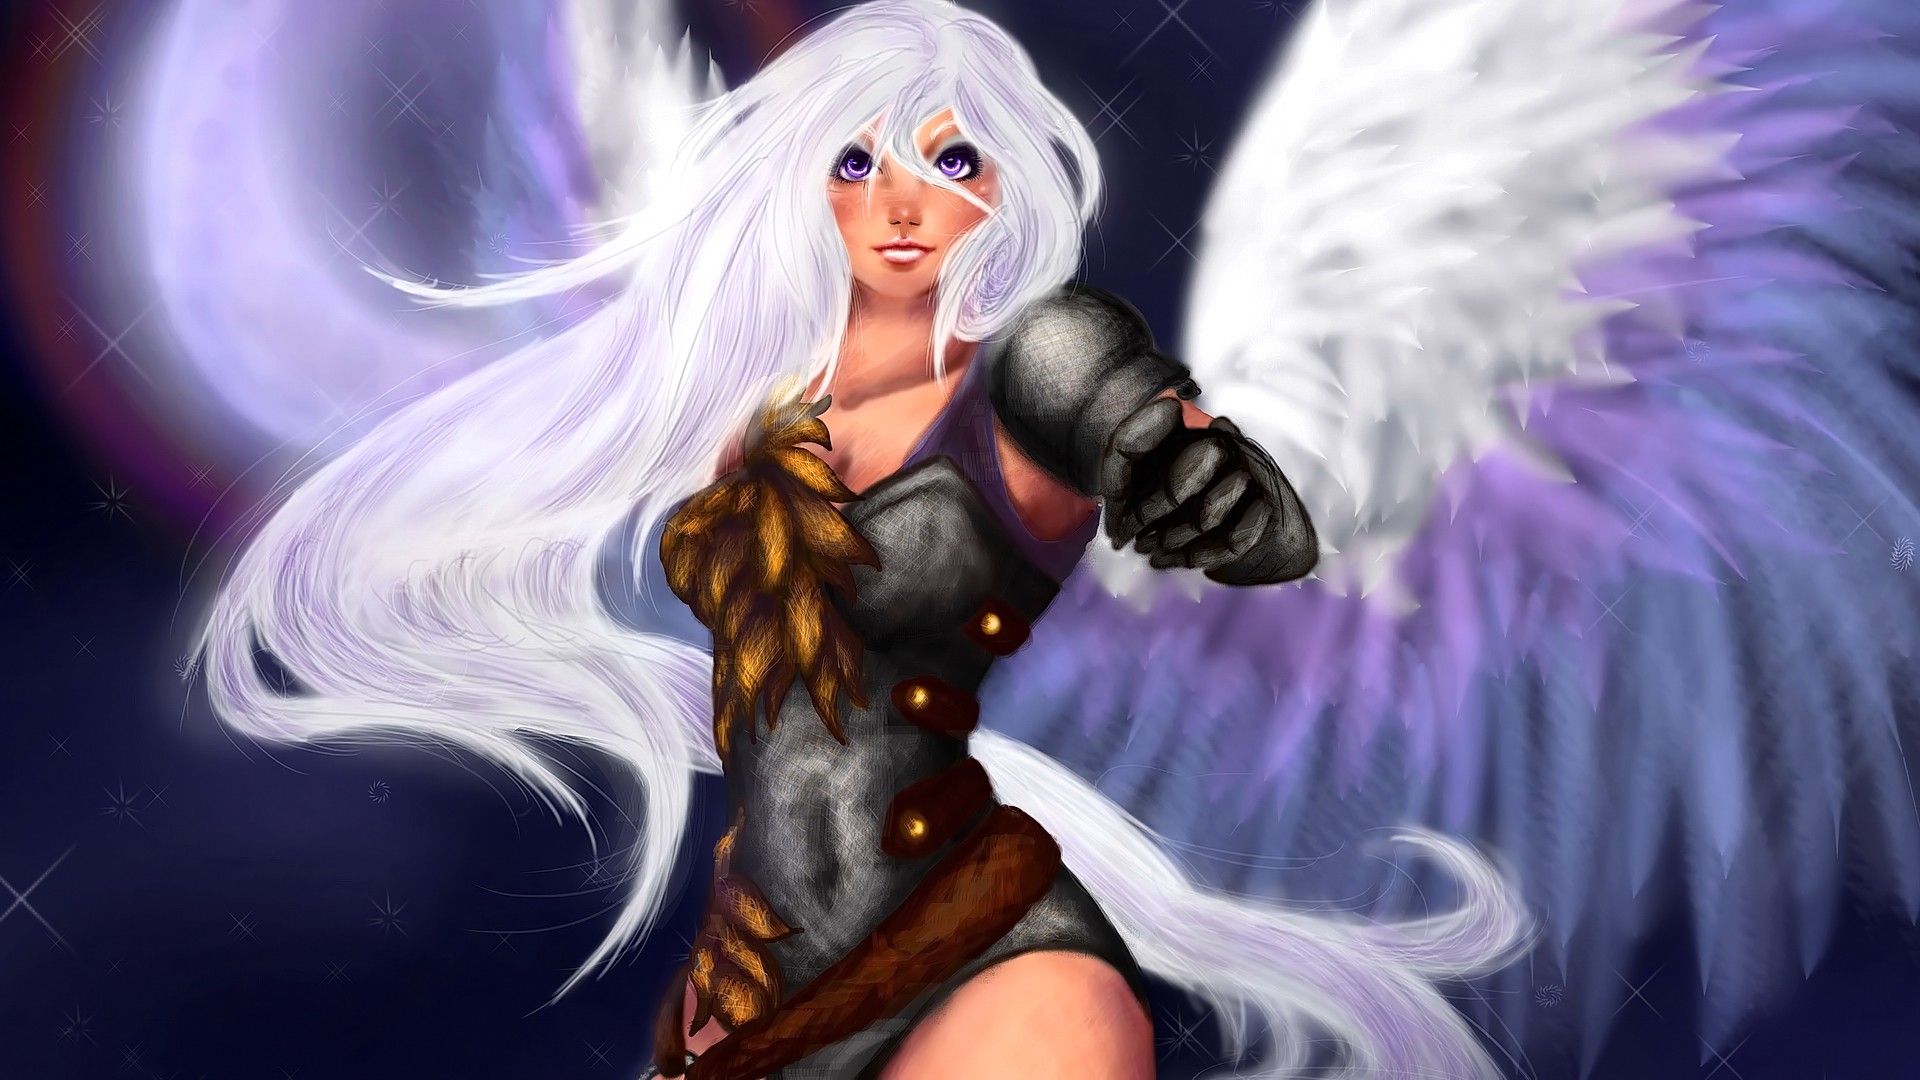 Anime 1920x1080 anime anime girls angel wings long hair fantasy art fantasy girl